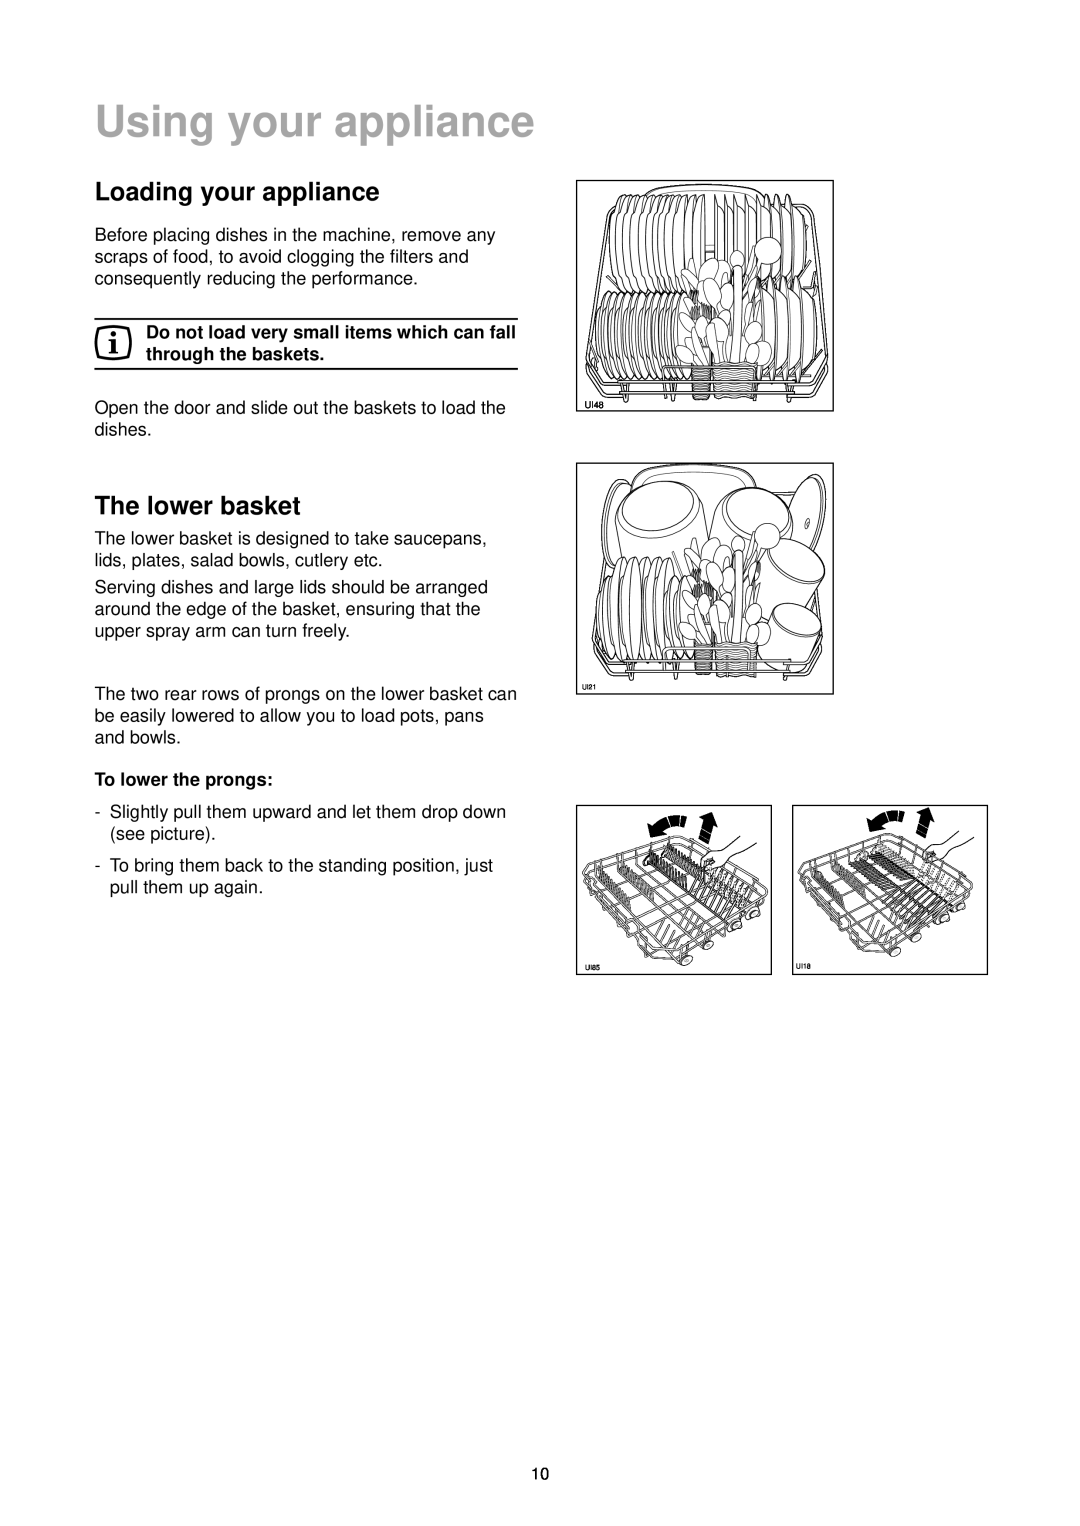 Zanussi DE 6965 manual Using your appliance, Loading your appliance, The lower basket, To lower the prongs 